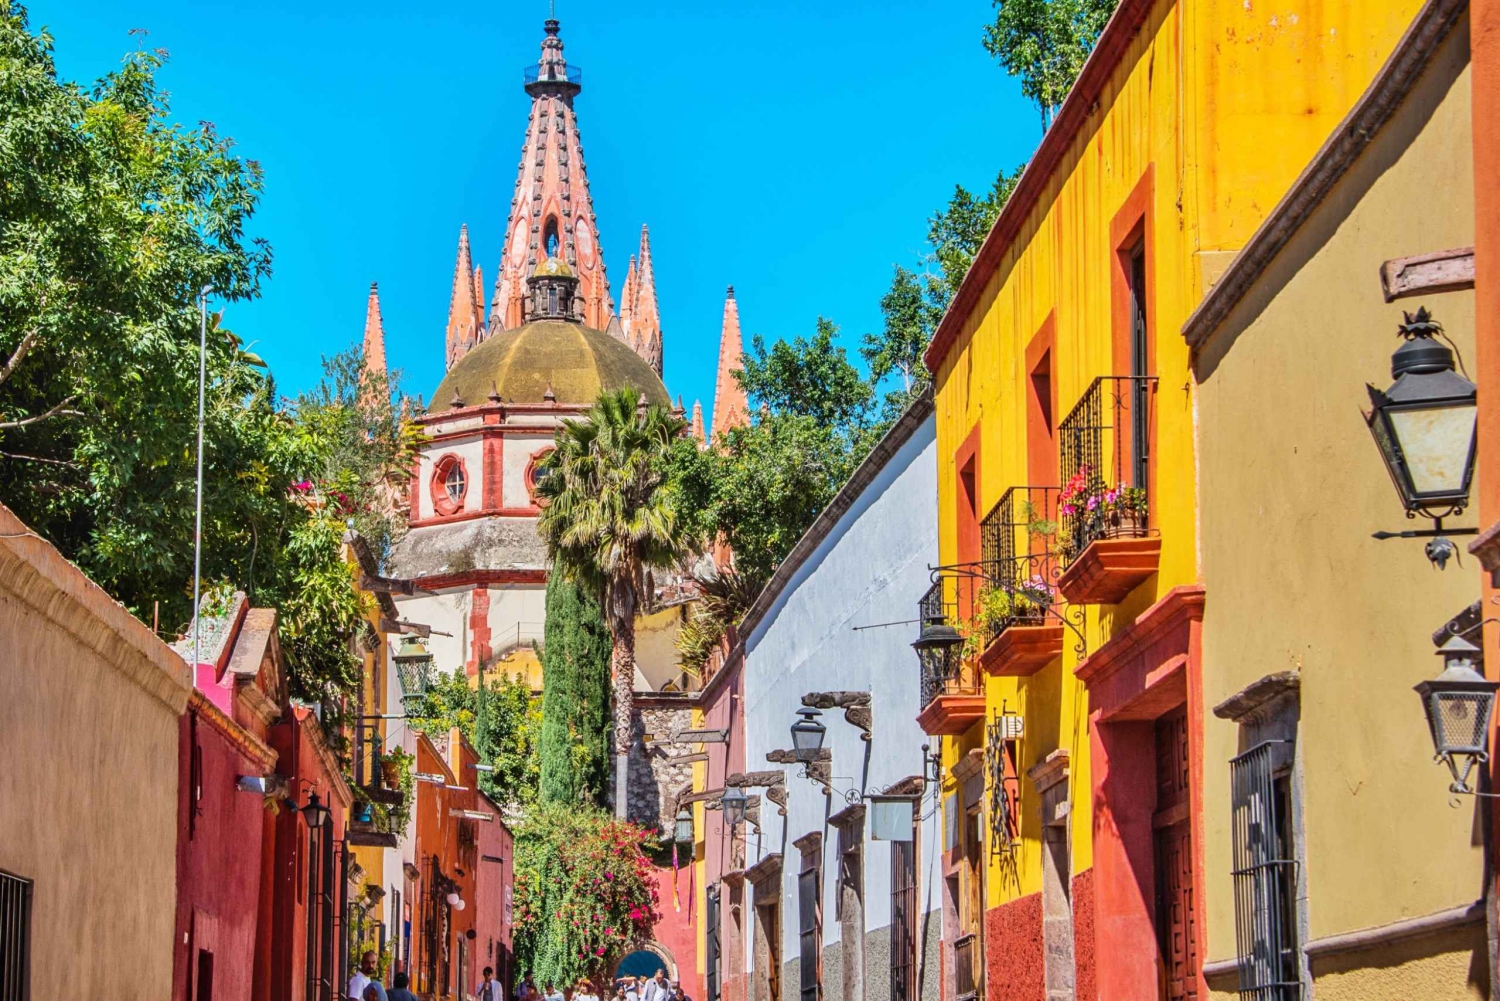 From Mexico City: San Miguel de Allende Instagram Tour